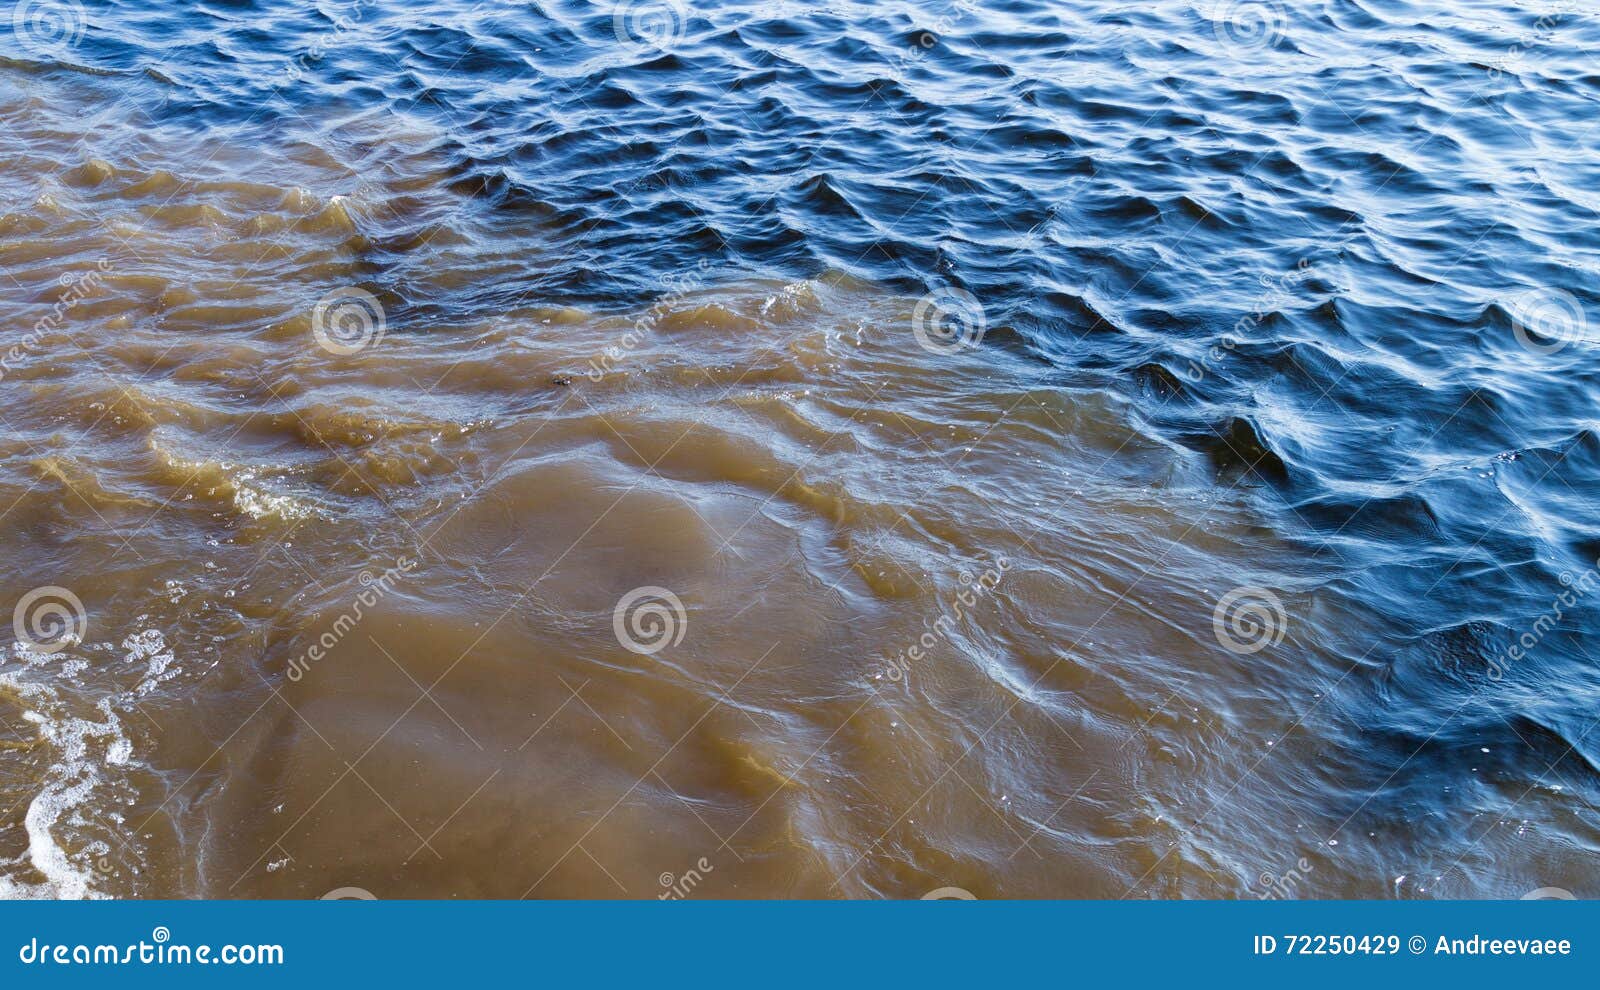 А жизнь мутная вода волна. Чистое и грязное море. Чистая вода и грязная вода. Грязная и чистая вода в море. Мутная вода.